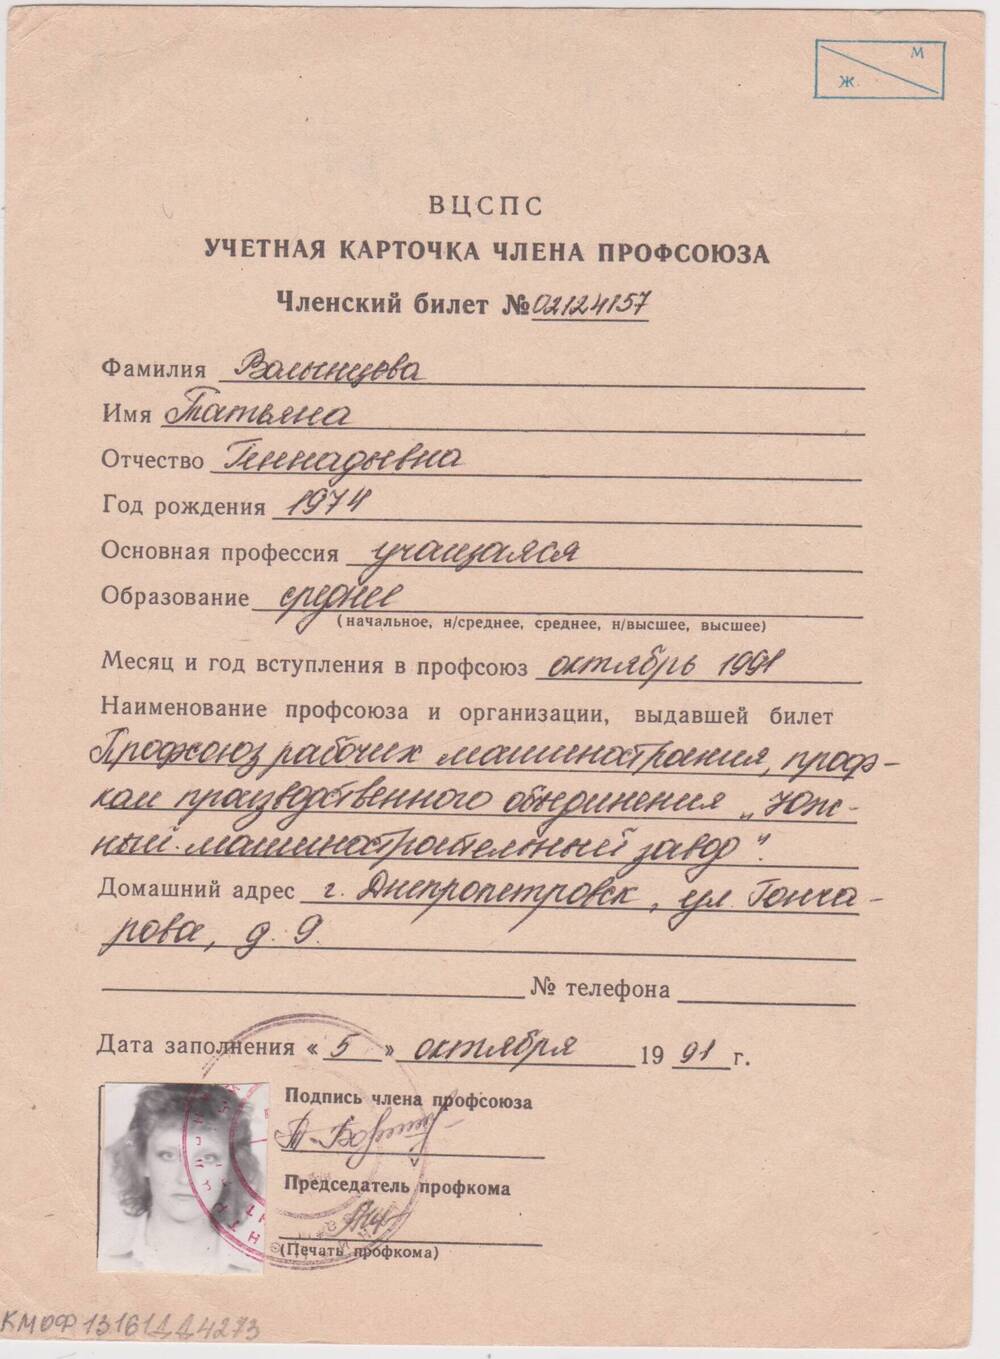 Учетная карточка члена профсоюза Волынцевой Татьяны Геннадьевны.